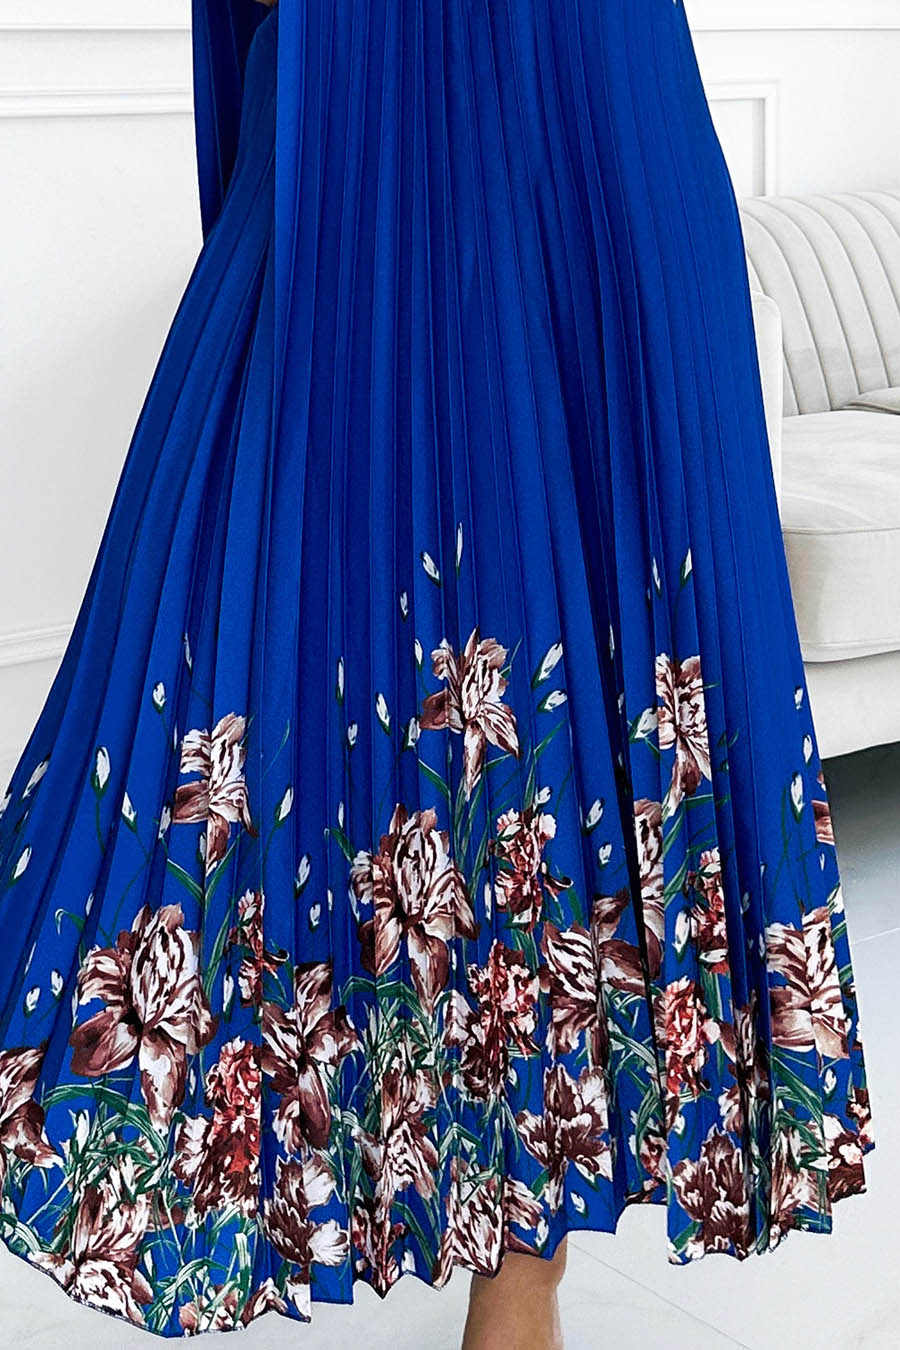 Γυναικείο φόρεμα Ester, Μπλε 7